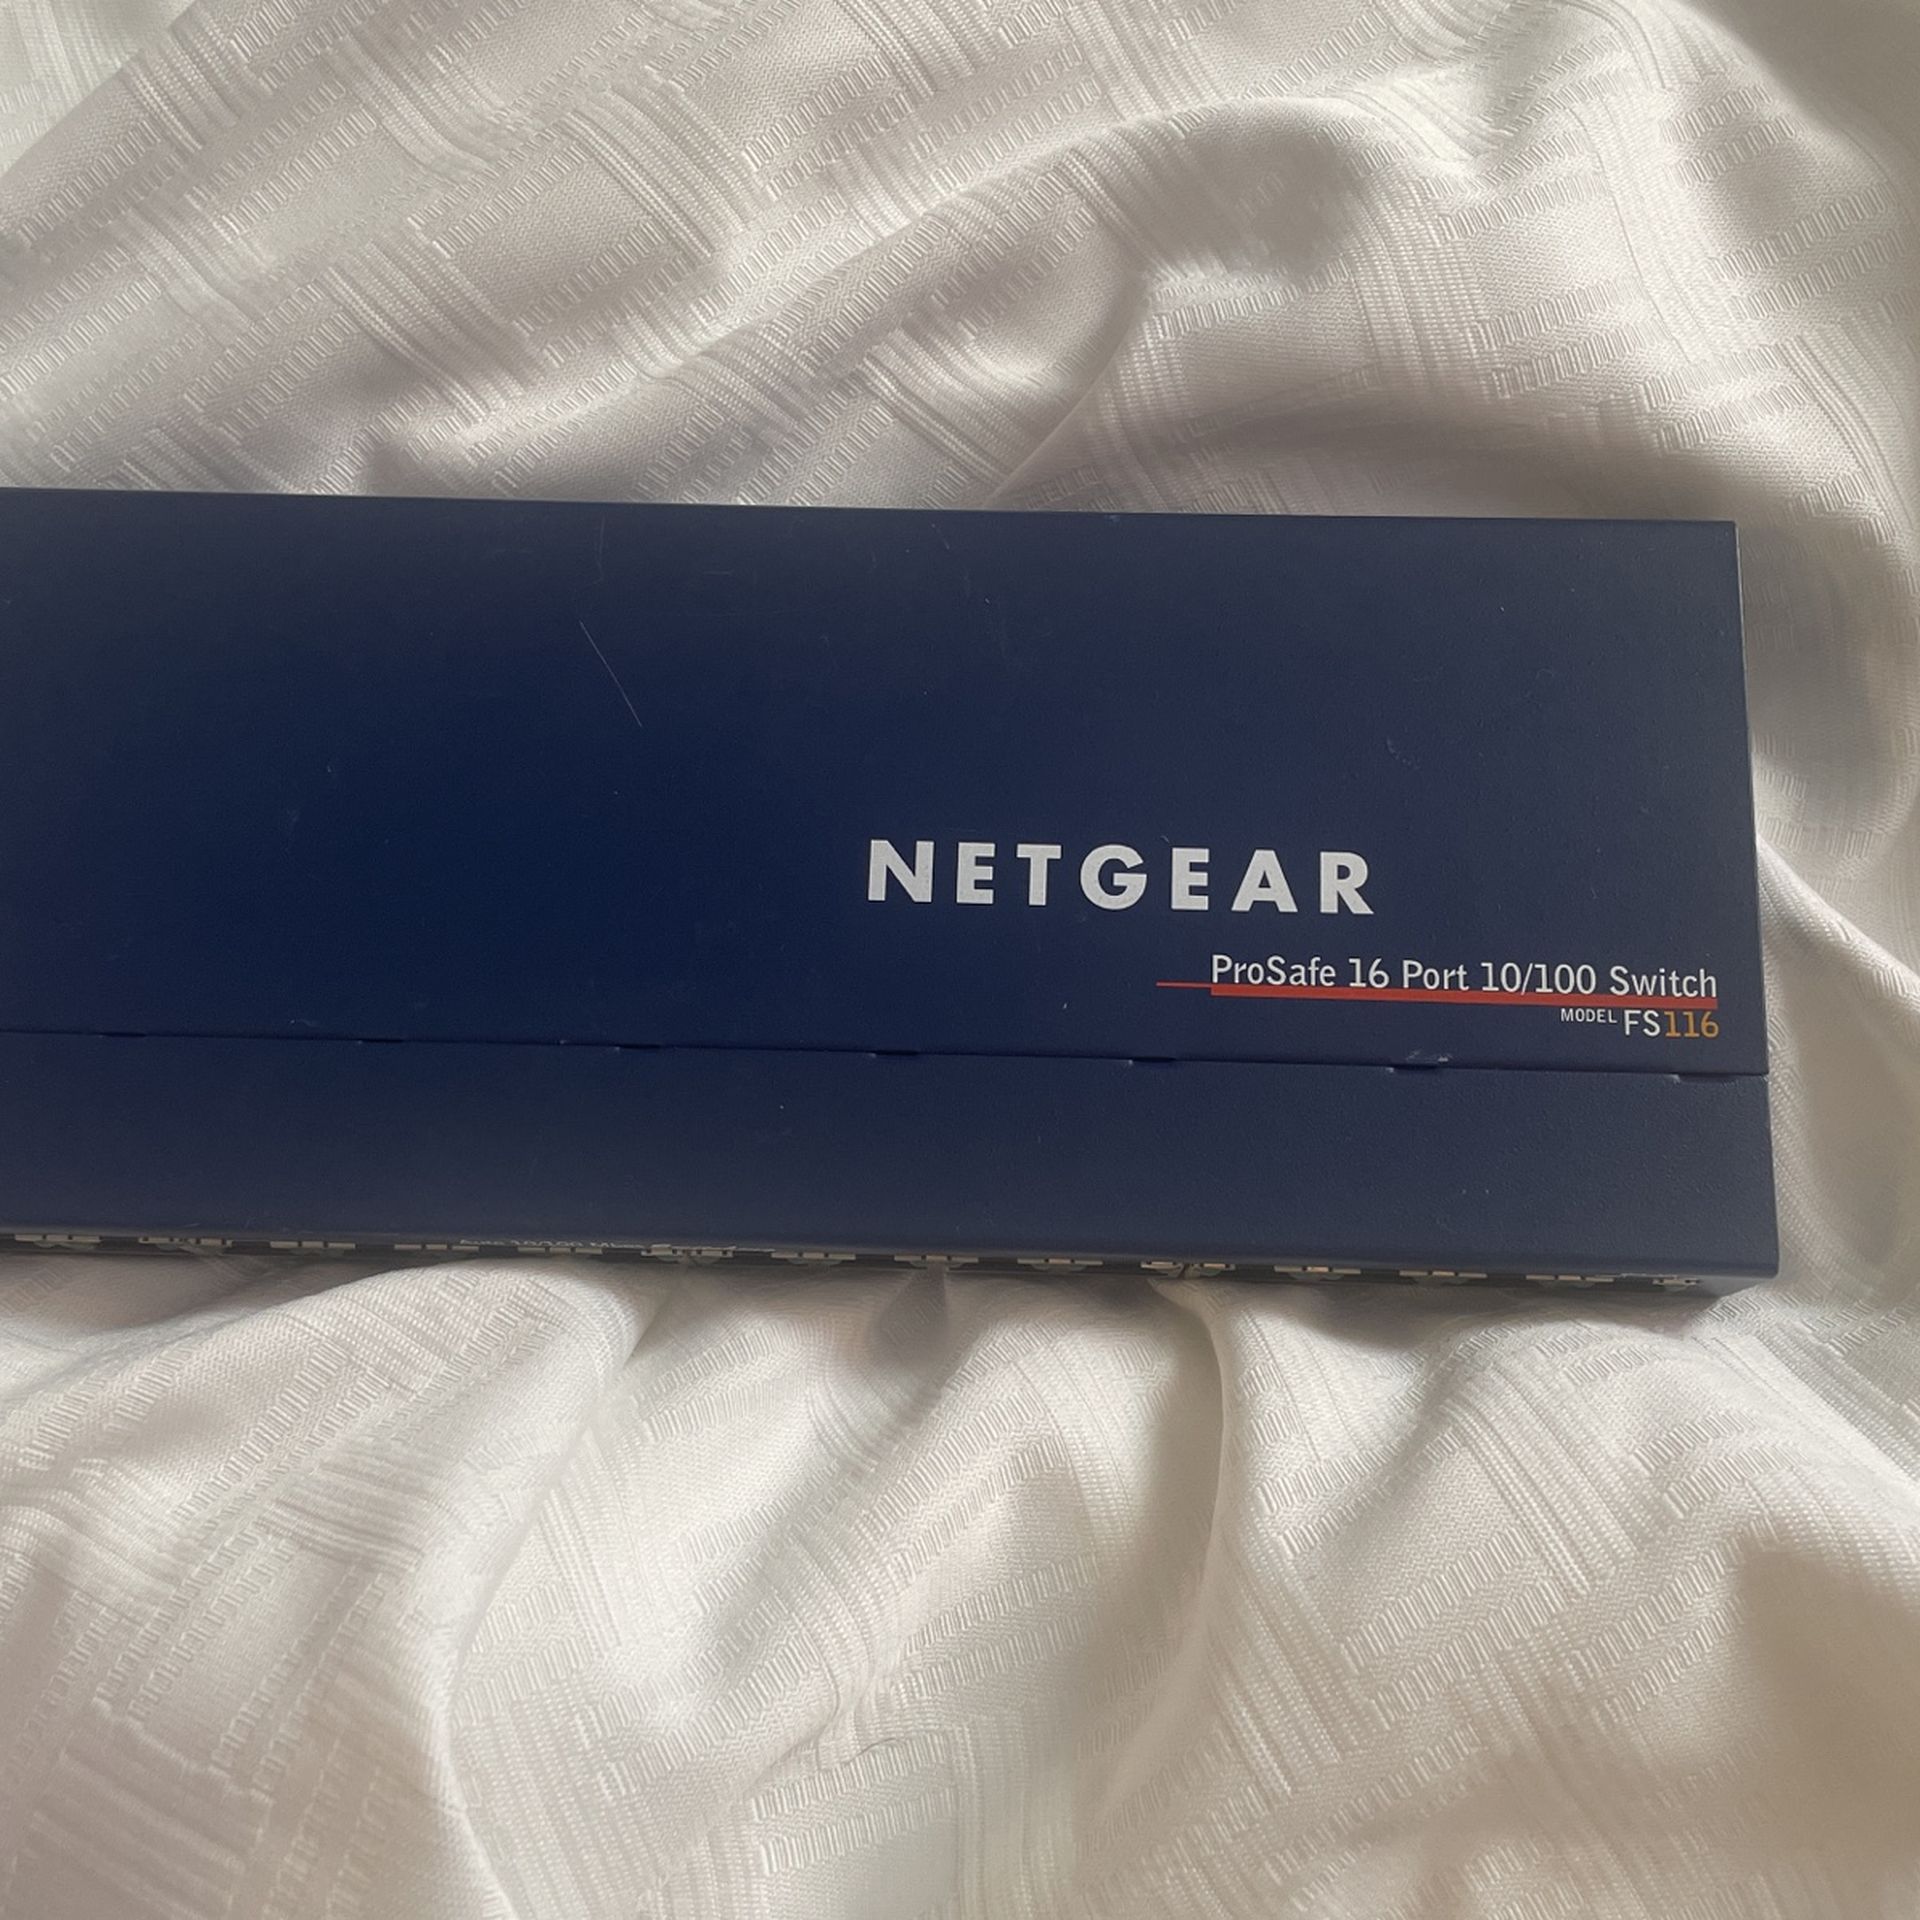  NETGEAR PROSAFE 16 Port   10/100 Switch